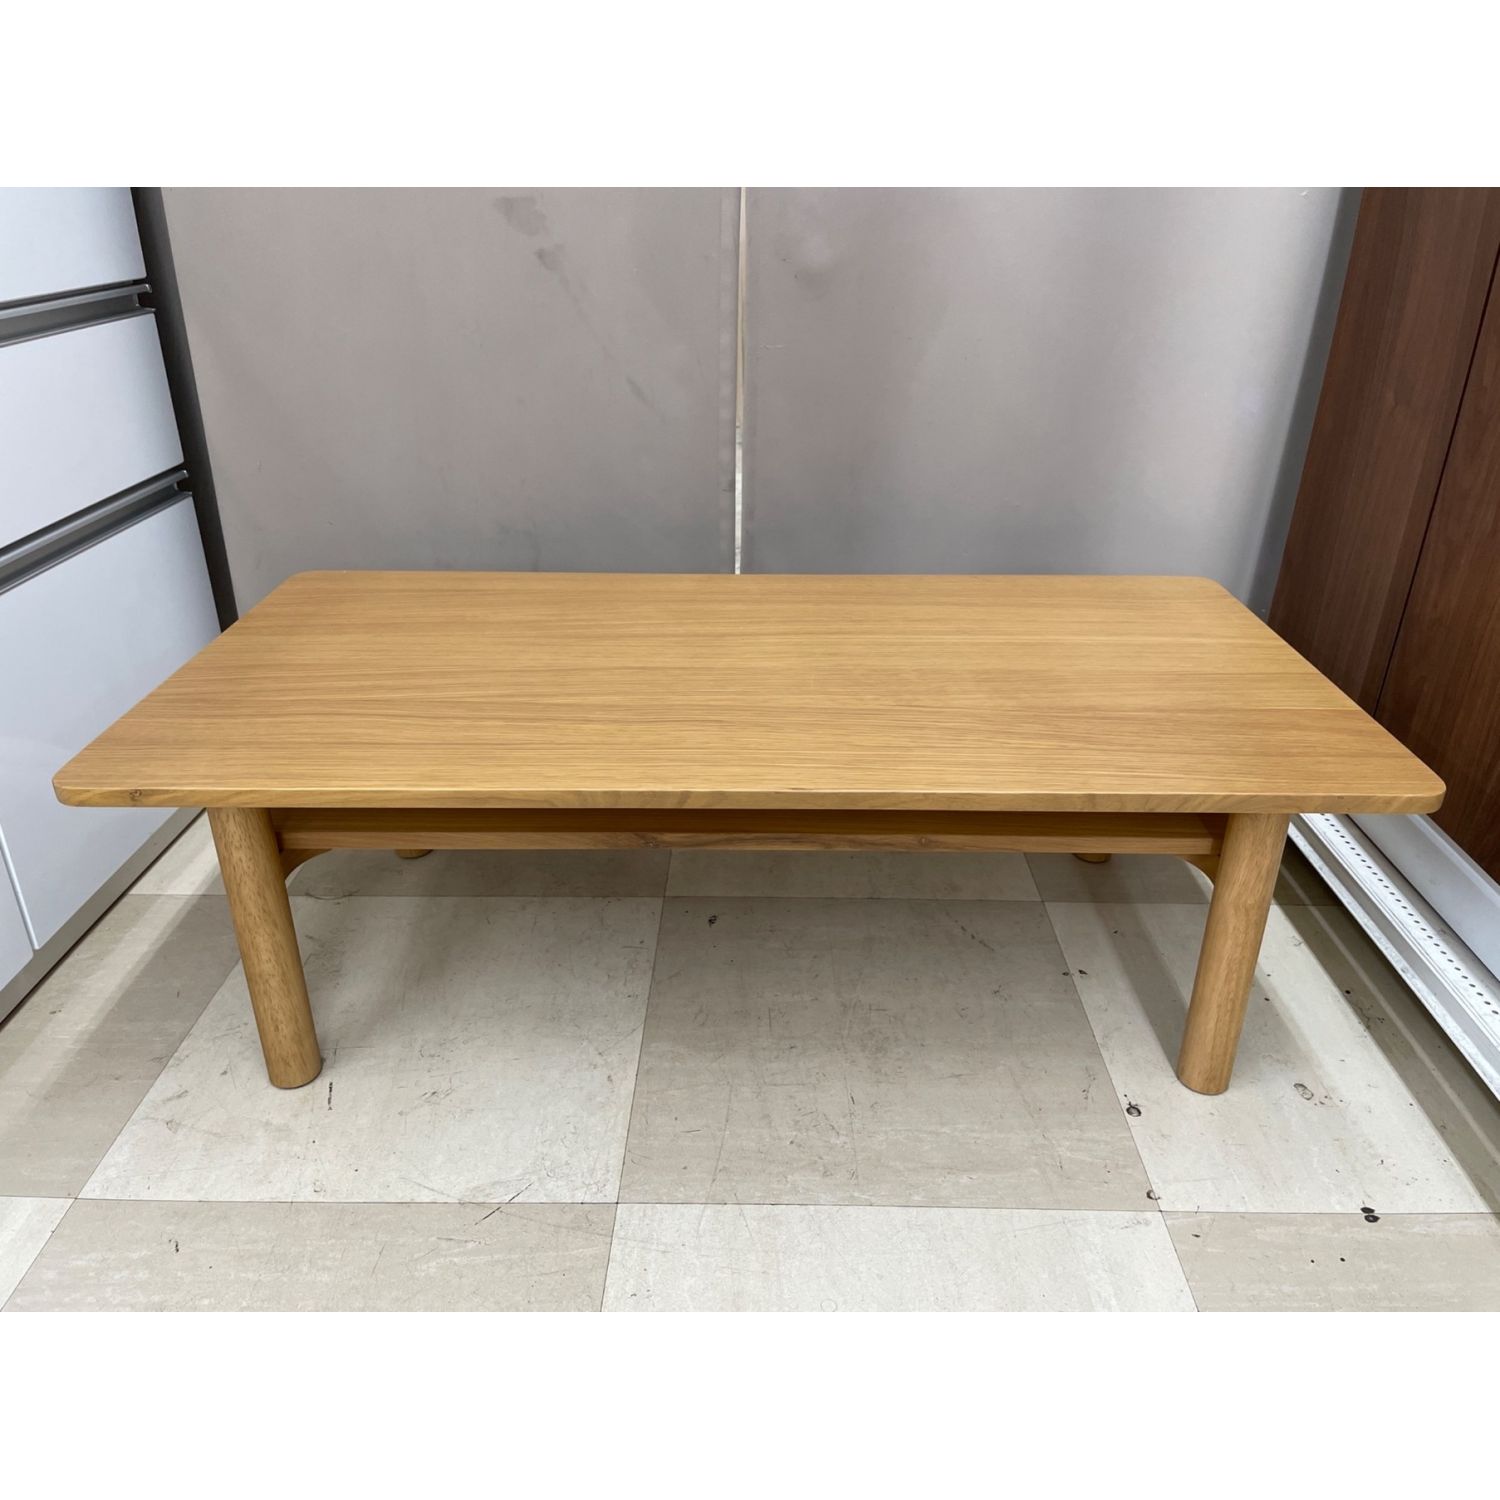 日本最大の 無印良品 木製ローテーブル・オーク材 センターテーブル 